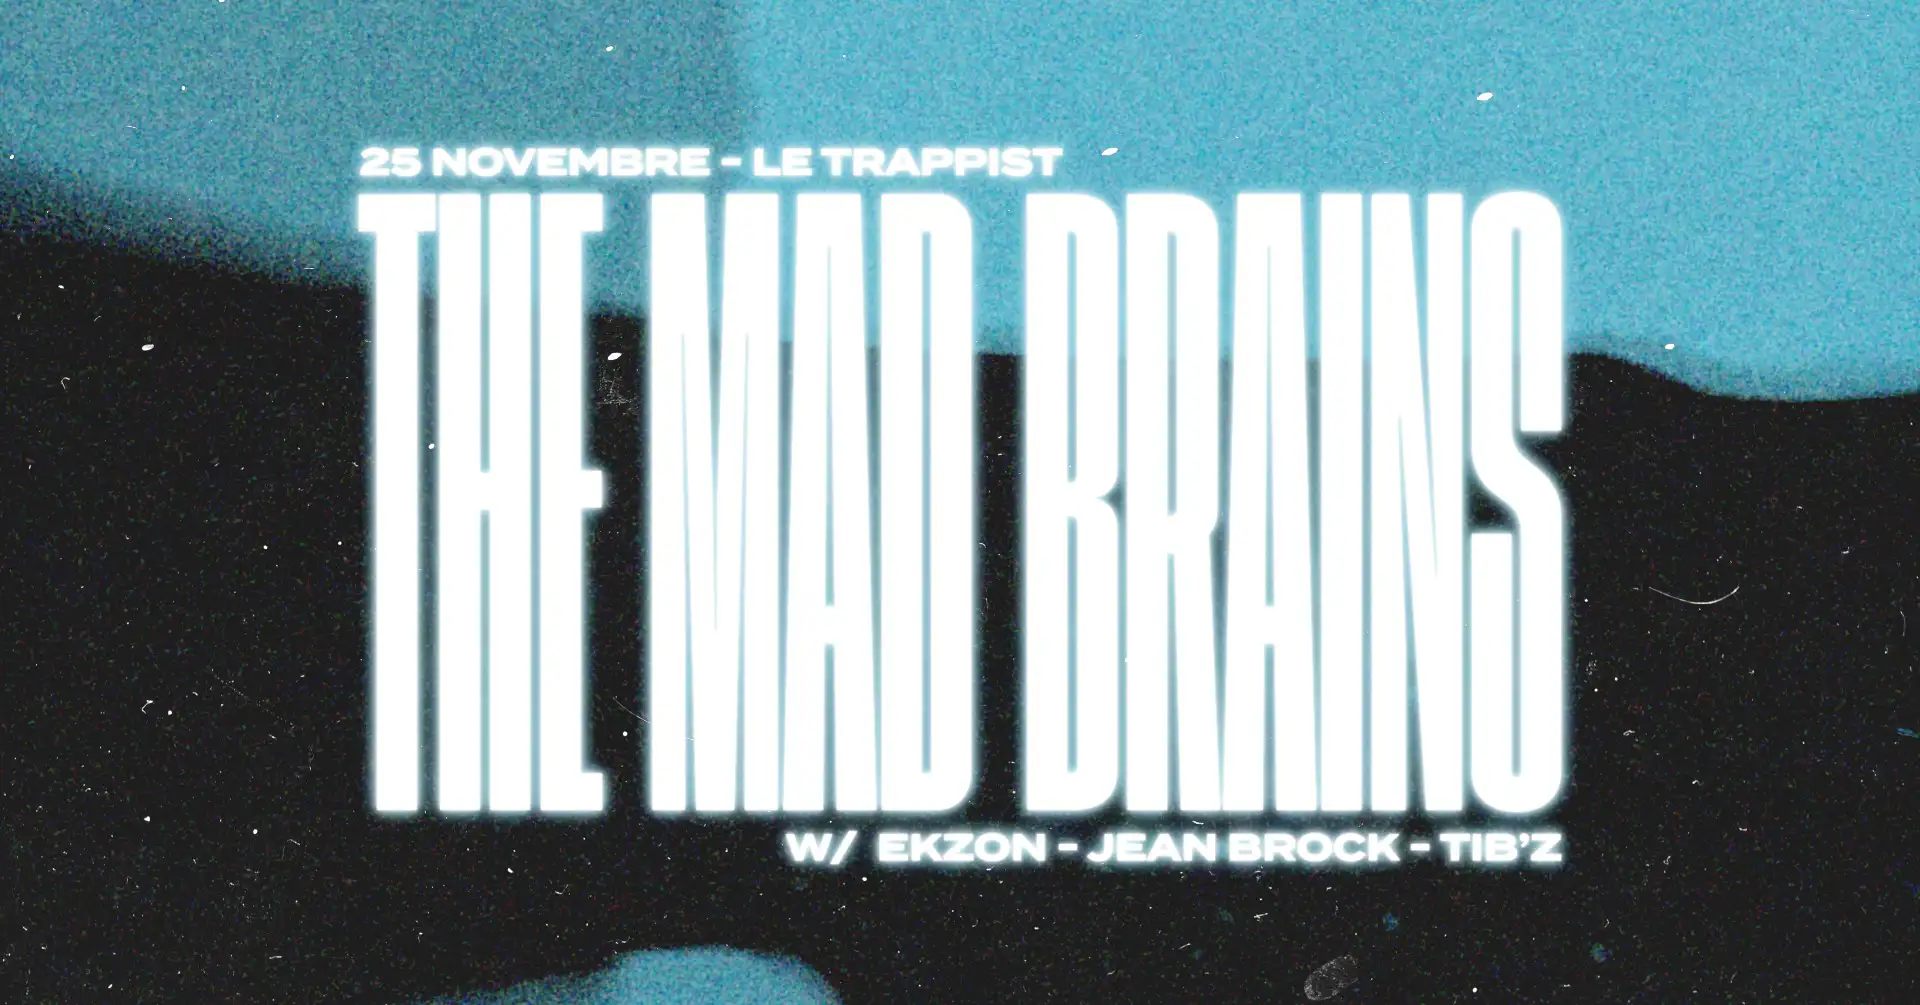 Le Trappist x M.A.D Brains, évènement propulsé par M.A.D Brains, qui aura lieu le 24 nov 2022